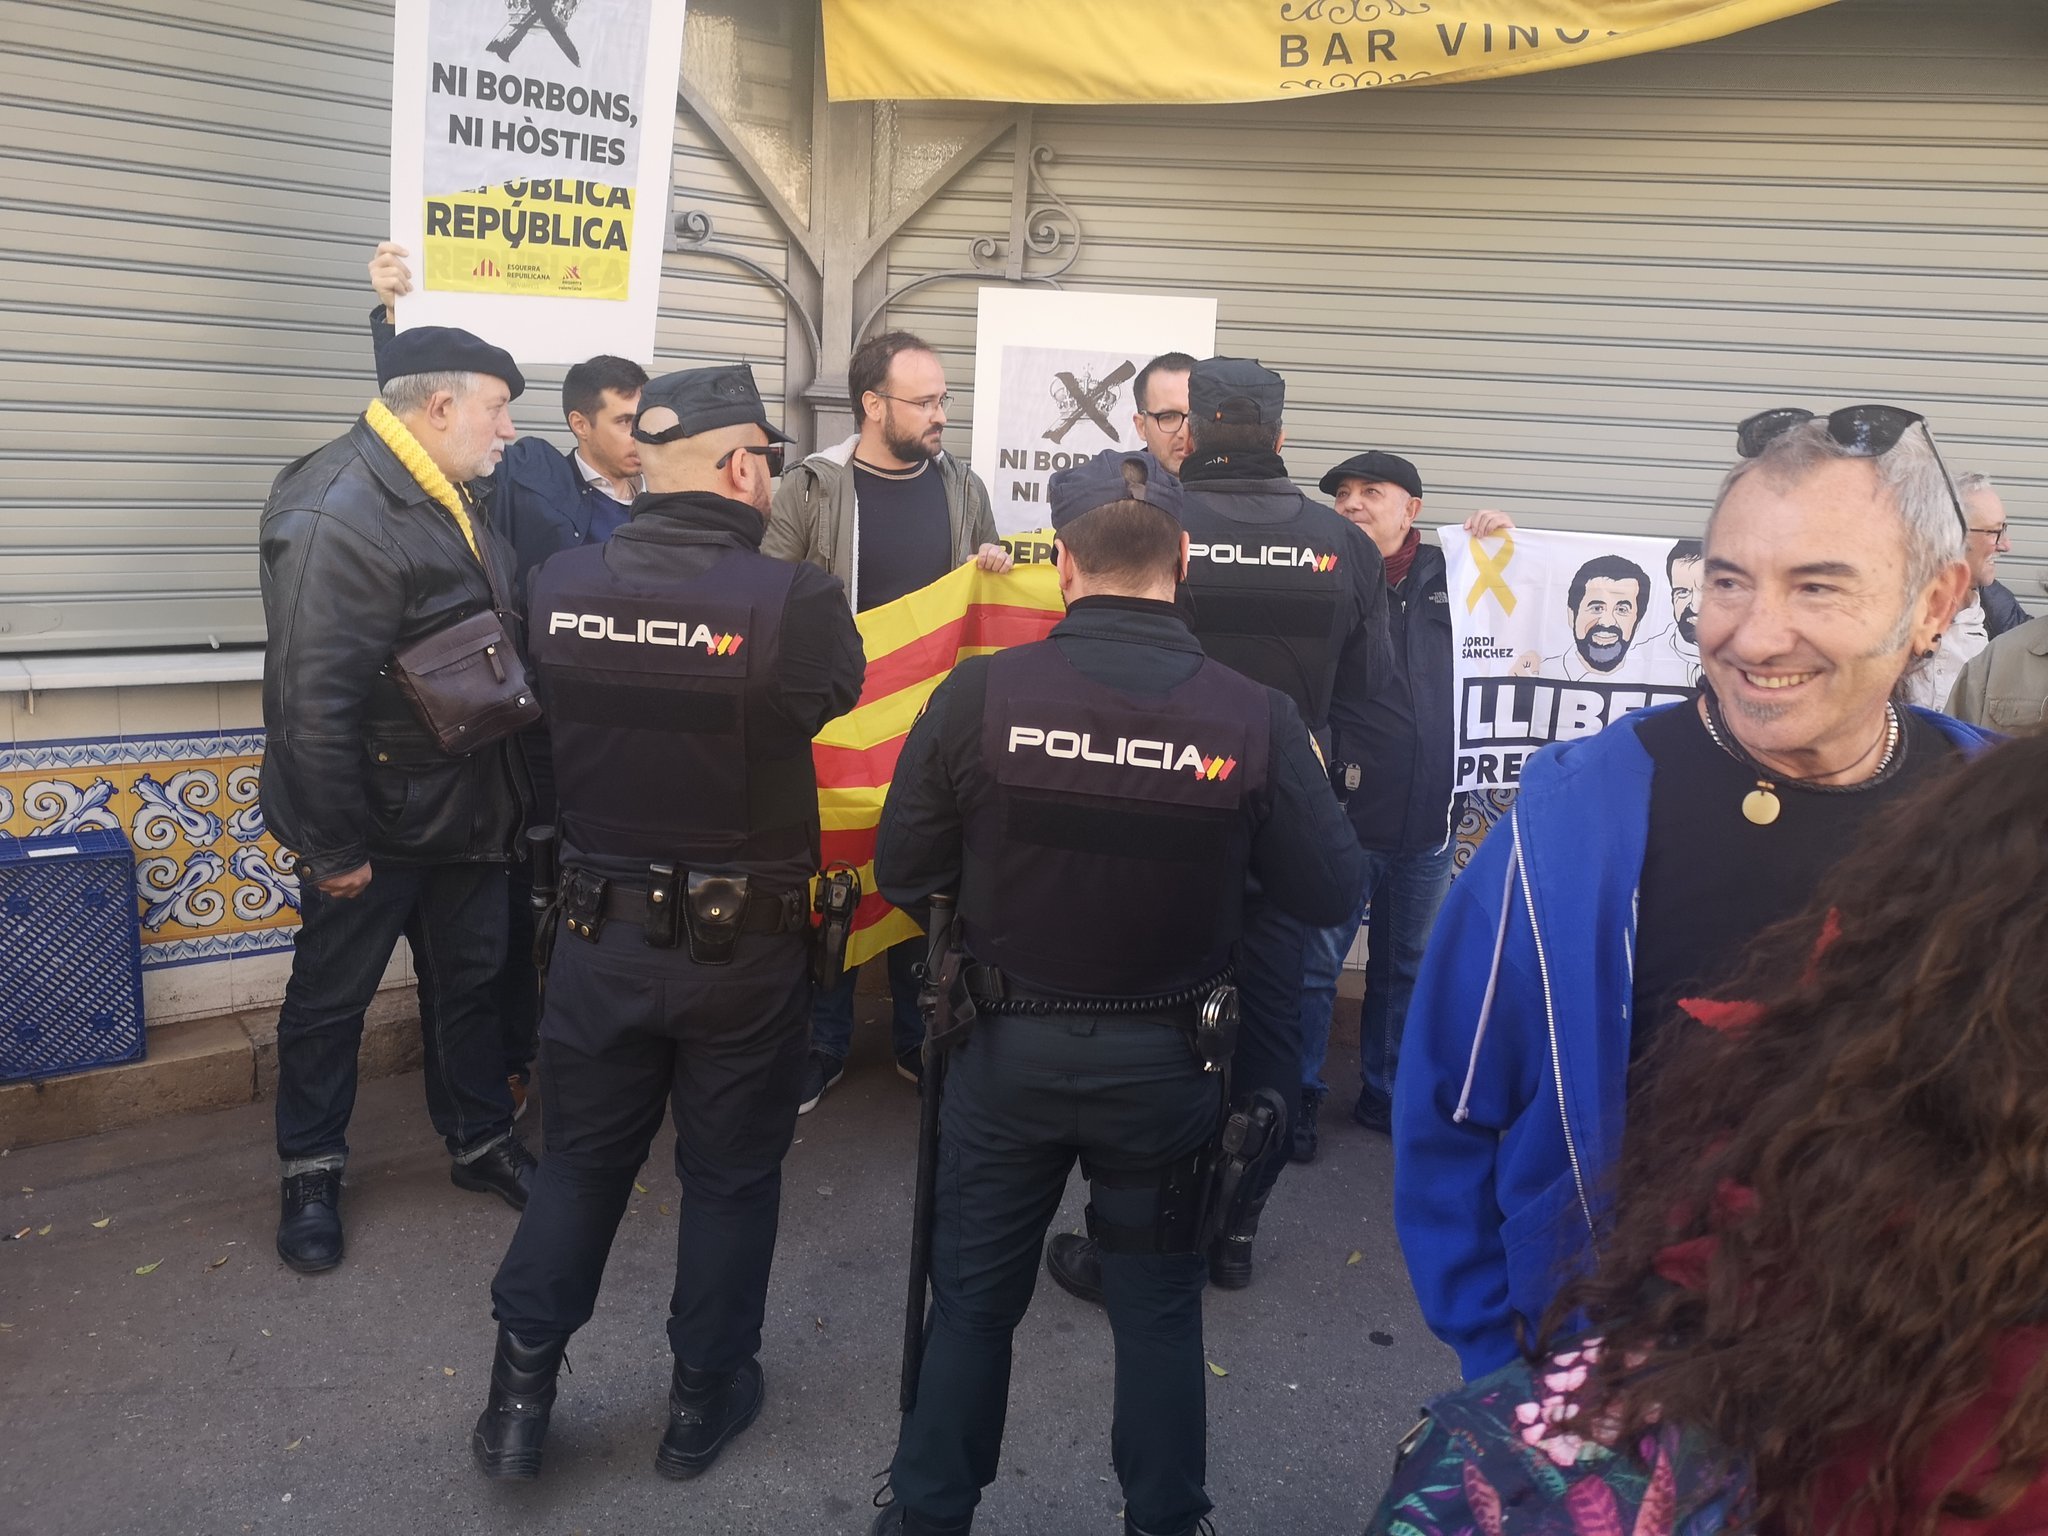 Una protesta contra Felipe VI en Valencia termina con retenciones de la policía